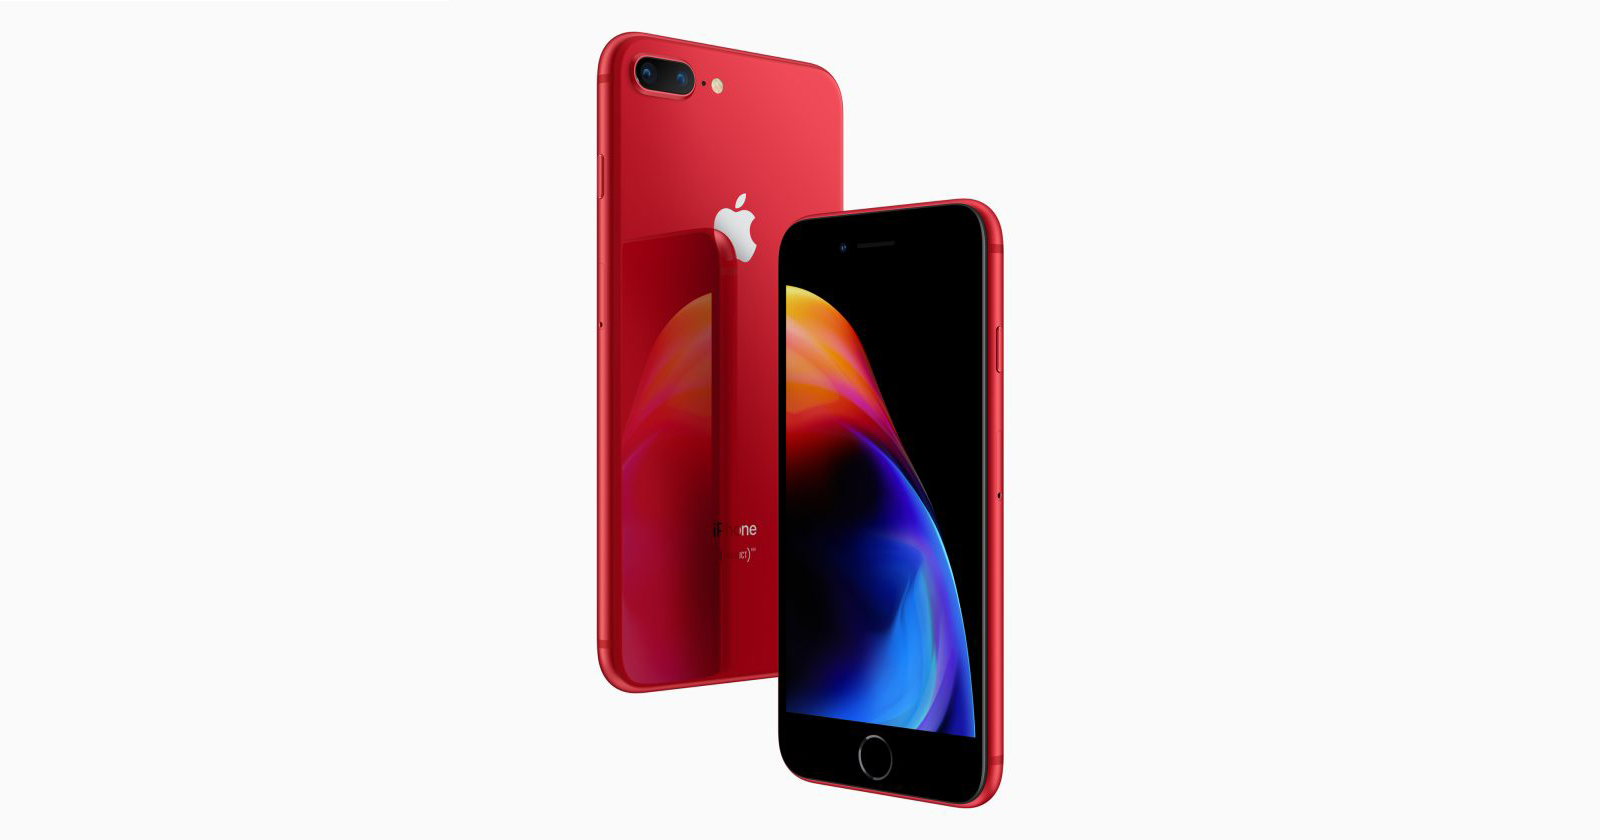 Apple ra mắt iPhone 8/8 Plus phiên bản đặc biệt màu đỏ với viền màn hình màu đen